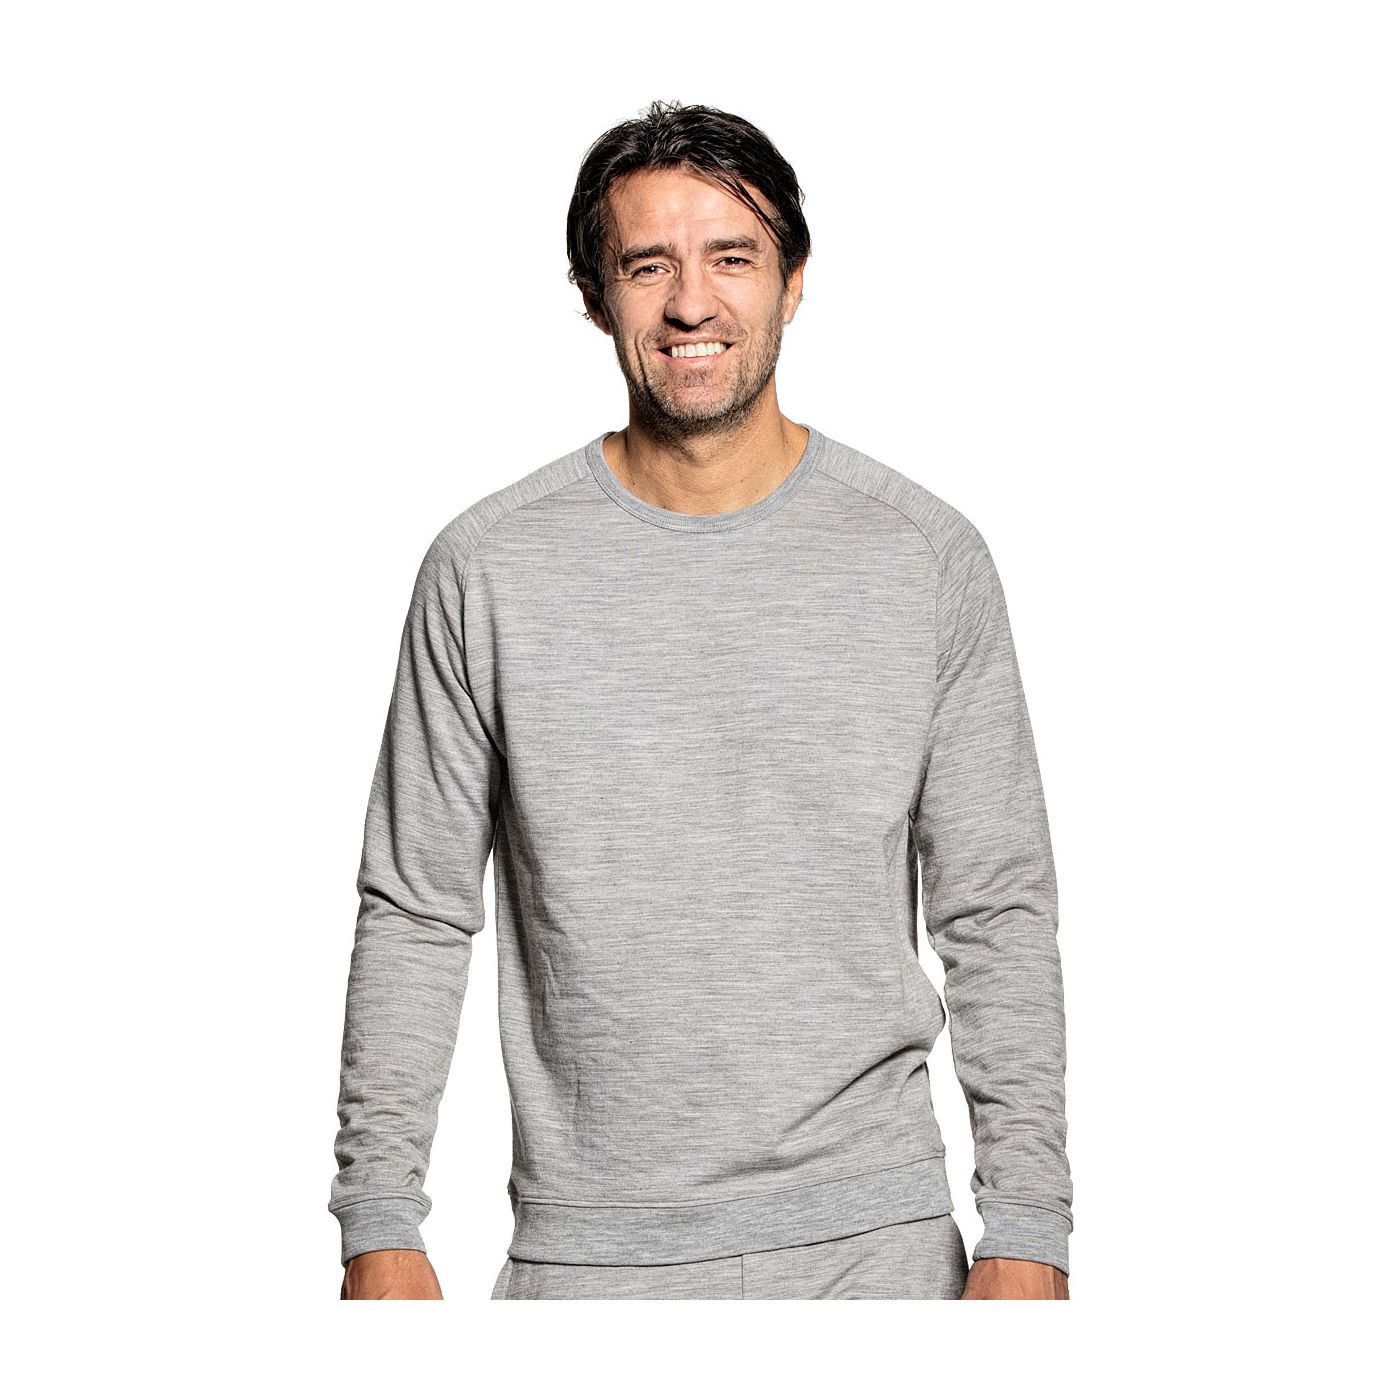 Sweatshirt for men made of Merino wool in Grey